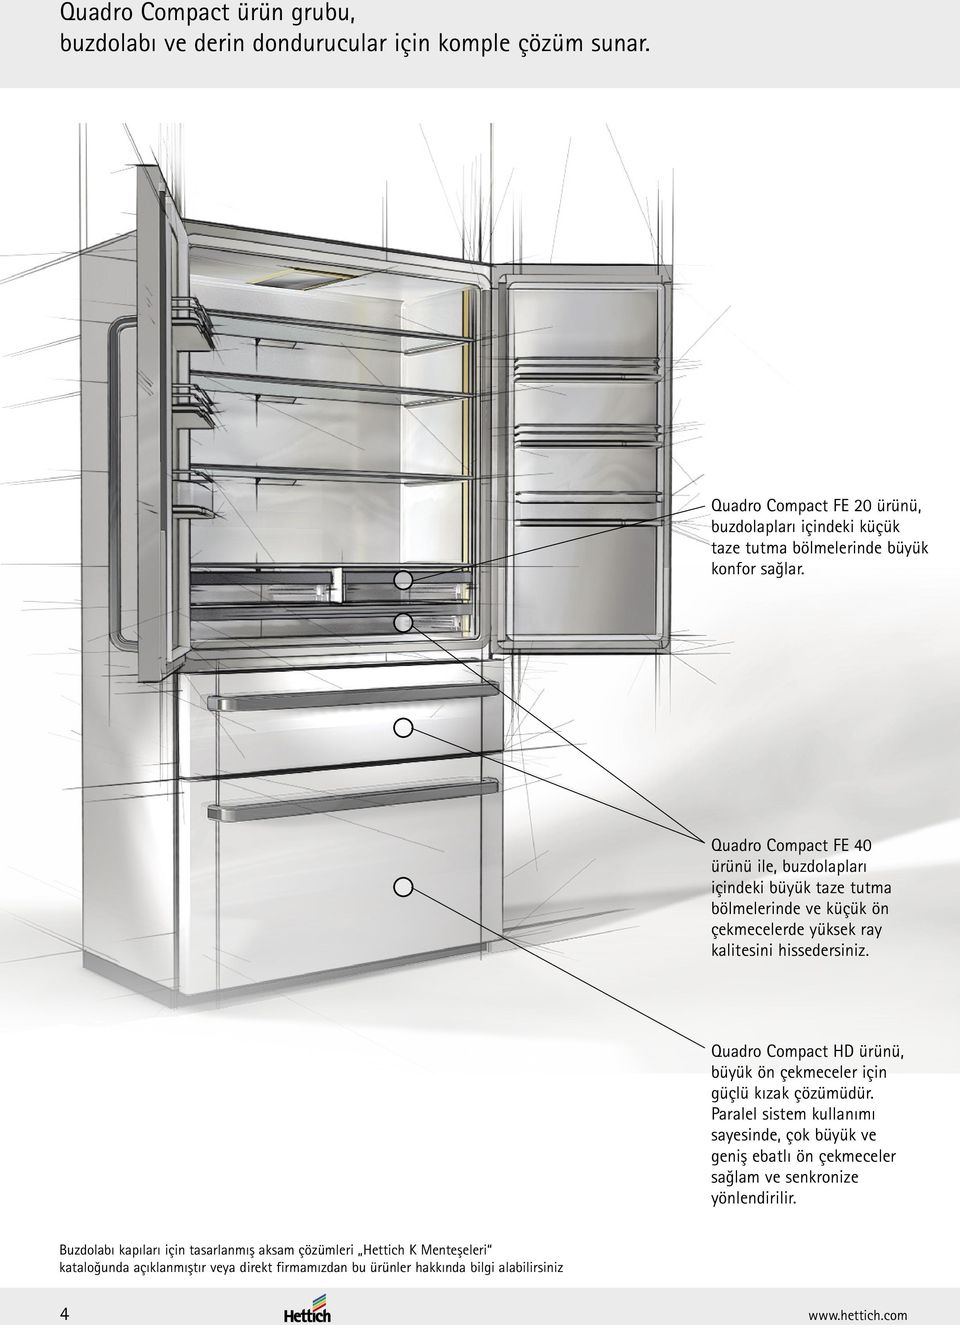 Quadro Compact FE 40 ürünü ile, buzdolapları içindeki büyük taze tutma bölmelerinde ve küçük ön çekmecelerde yüksek ray kalitesini hissedersiniz.